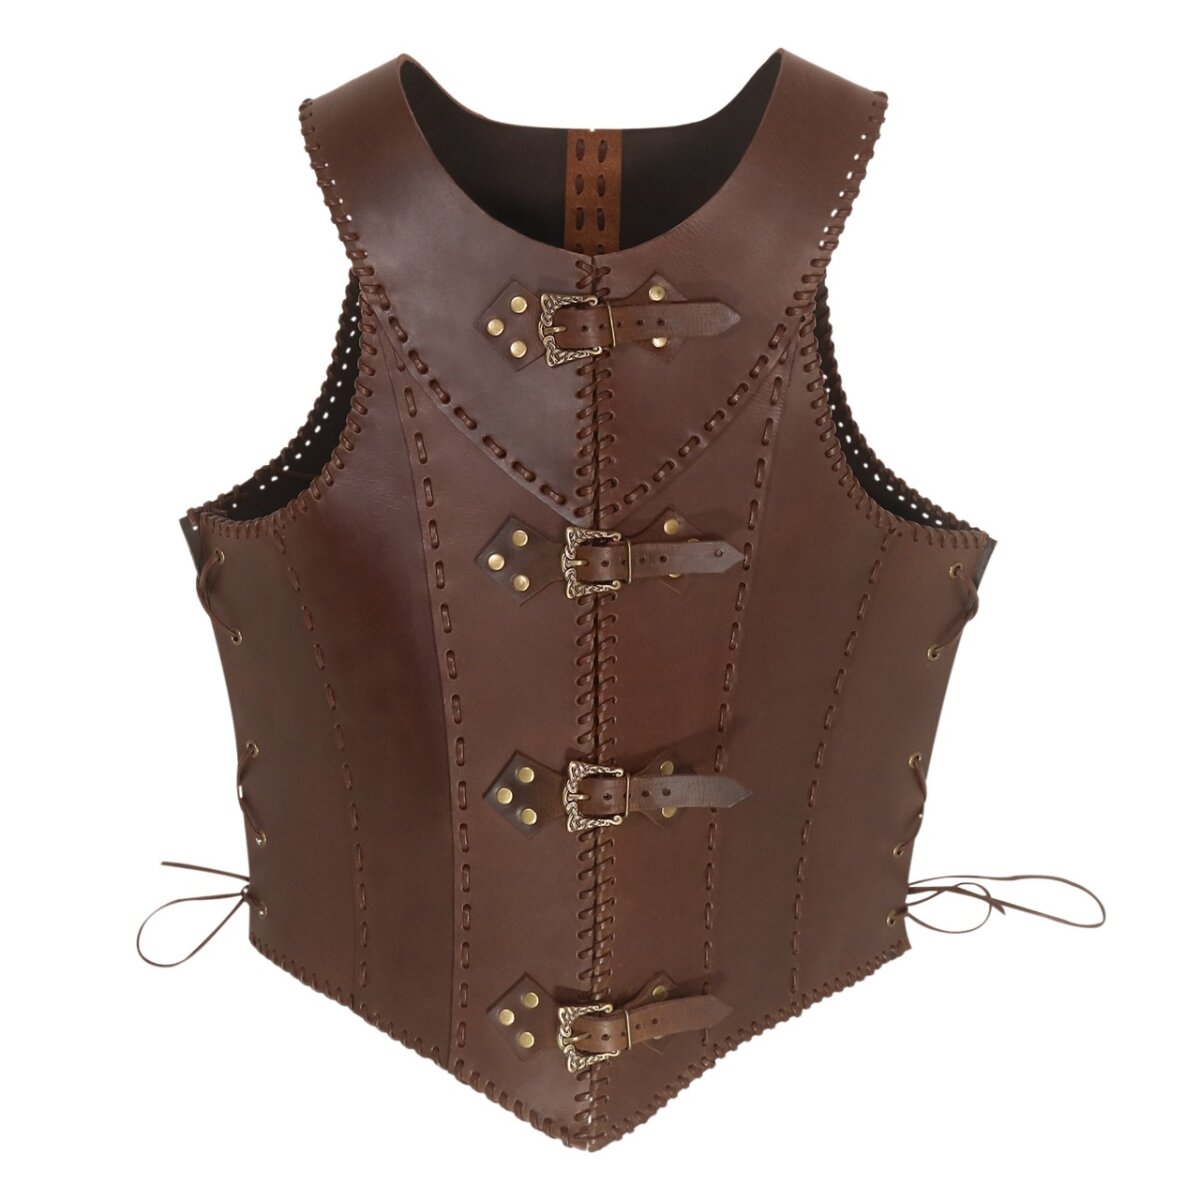 Medieval Warrior corset en cuir ou corsage en cuir brun